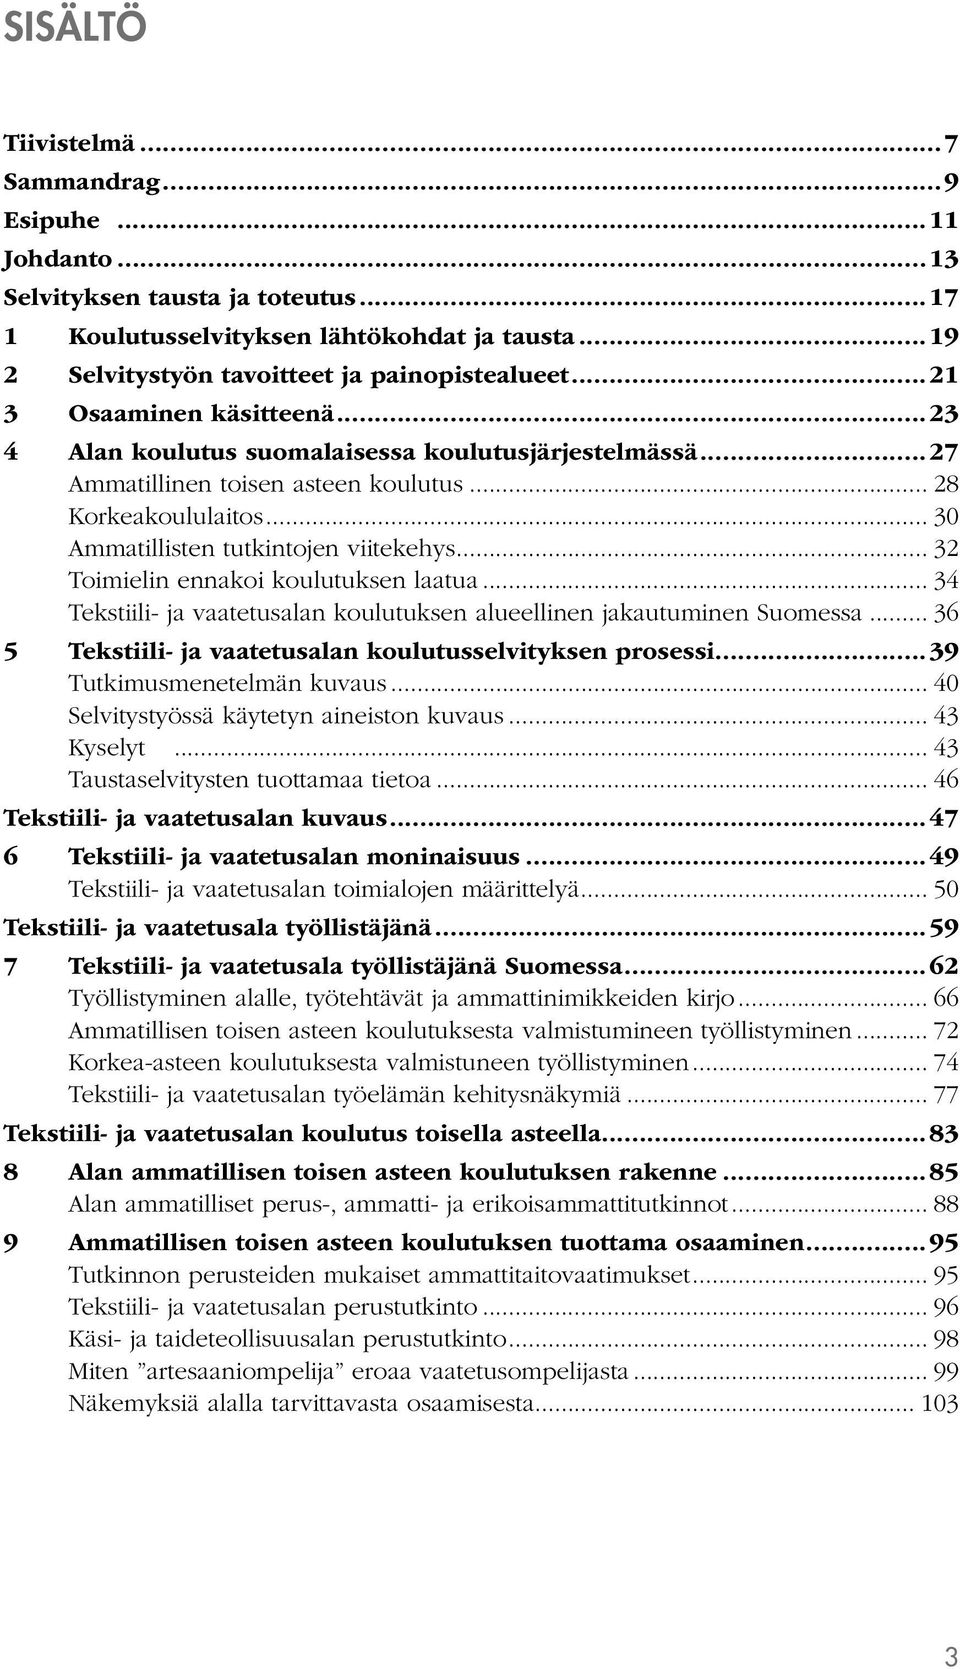 .. 32 Toimielin ennakoi koulutuksen laatua... 34 Tekstiili- ja vaatetusalan koulutuksen alueellinen jakautuminen Suomessa... 36 5 Tekstiili- ja vaatetusalan koulutusselvityksen prosessi.